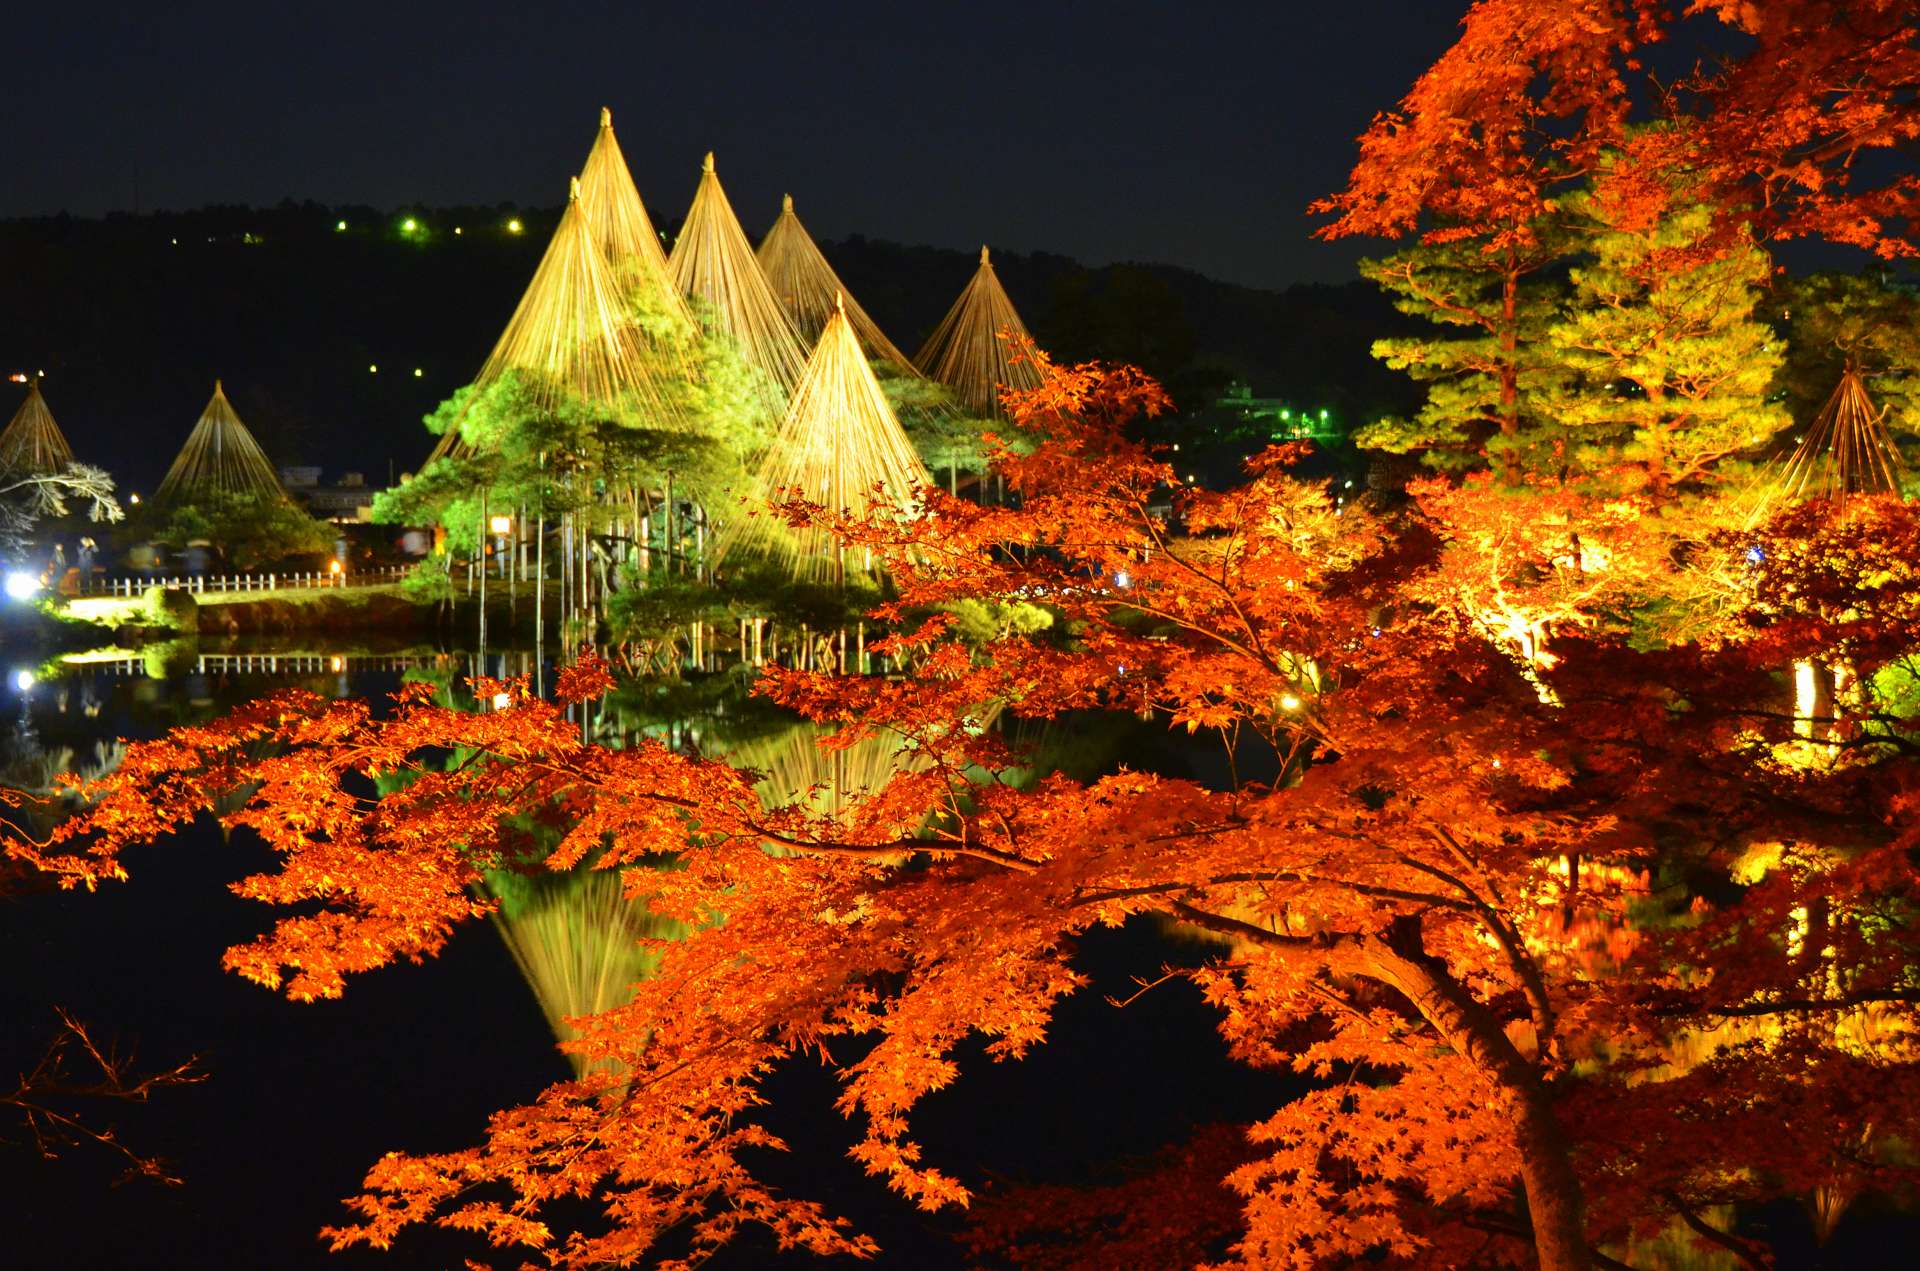 日本赏枫 观赏枫叶的最佳时期在11月的必看红叶景点总整理 好运日本行